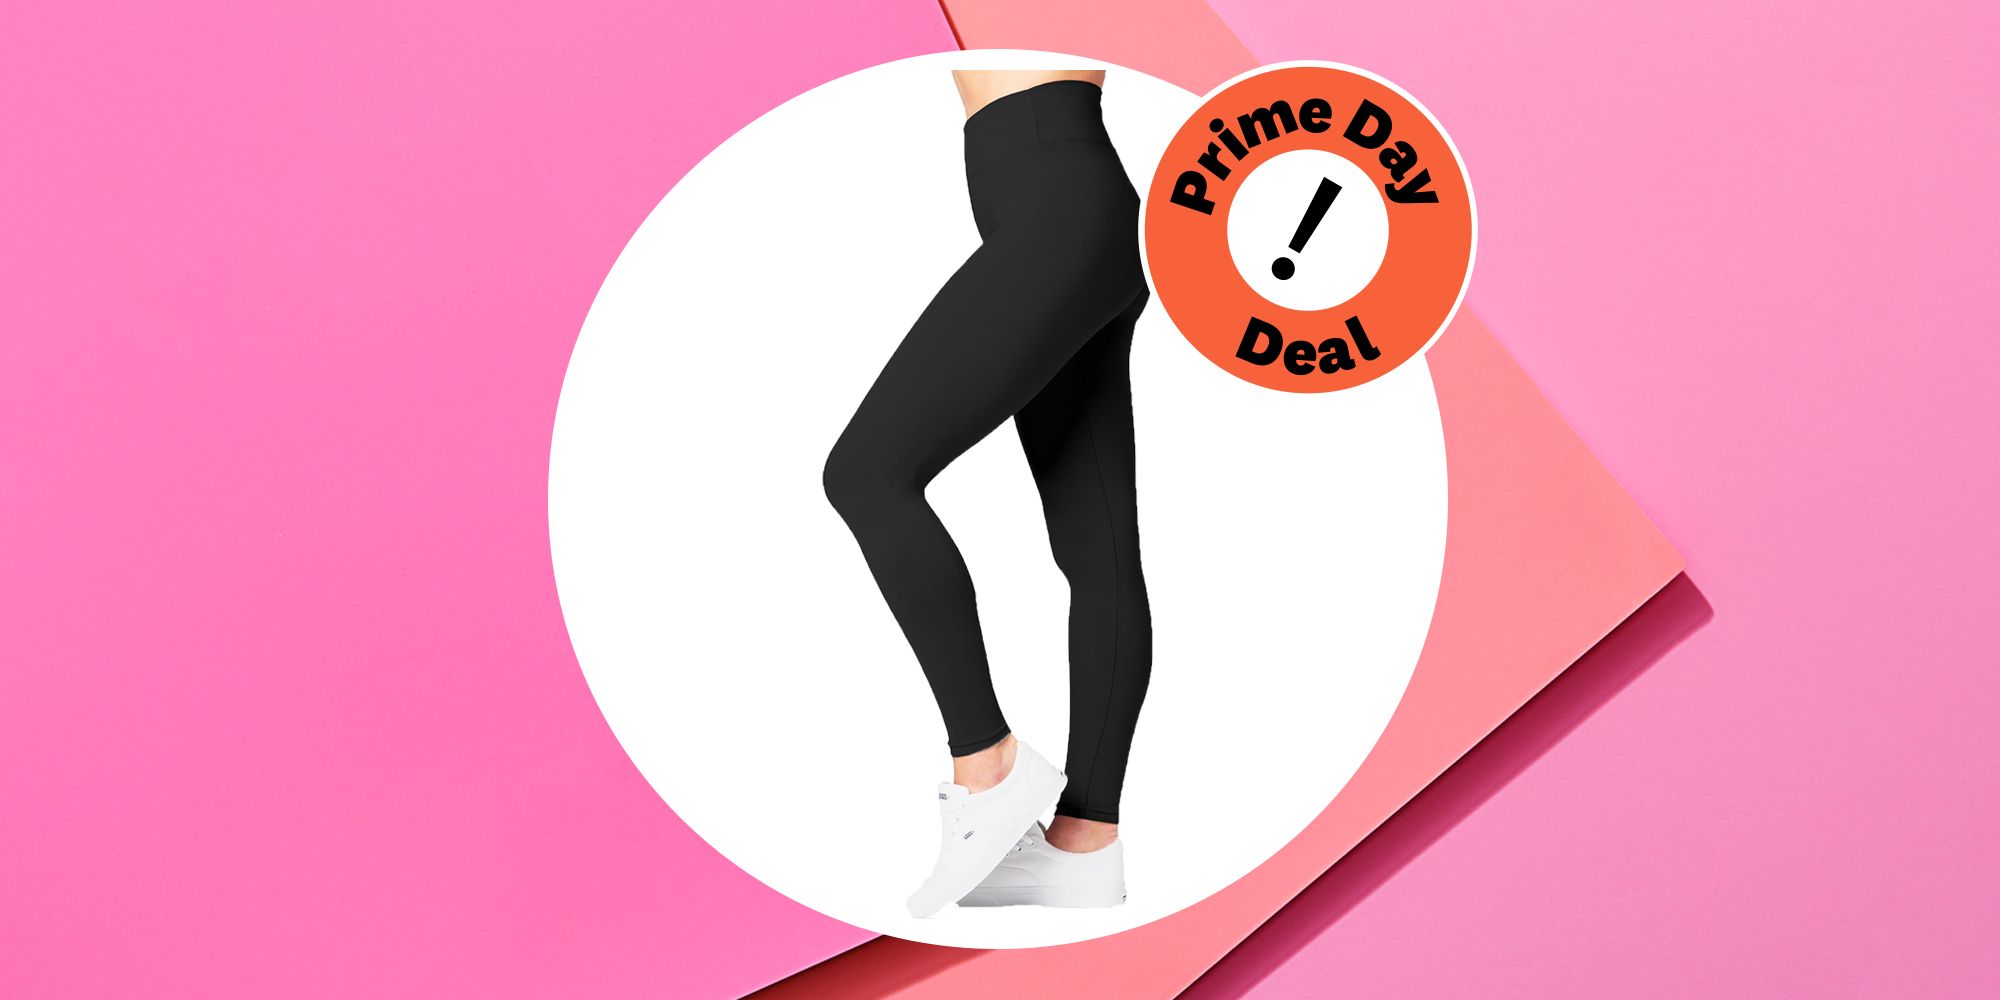 SATINA High Waisted Leggings for Women - Capri & Full Length Women's  Leggings | High waisted leggings, Best leggings, Buttery soft leggings